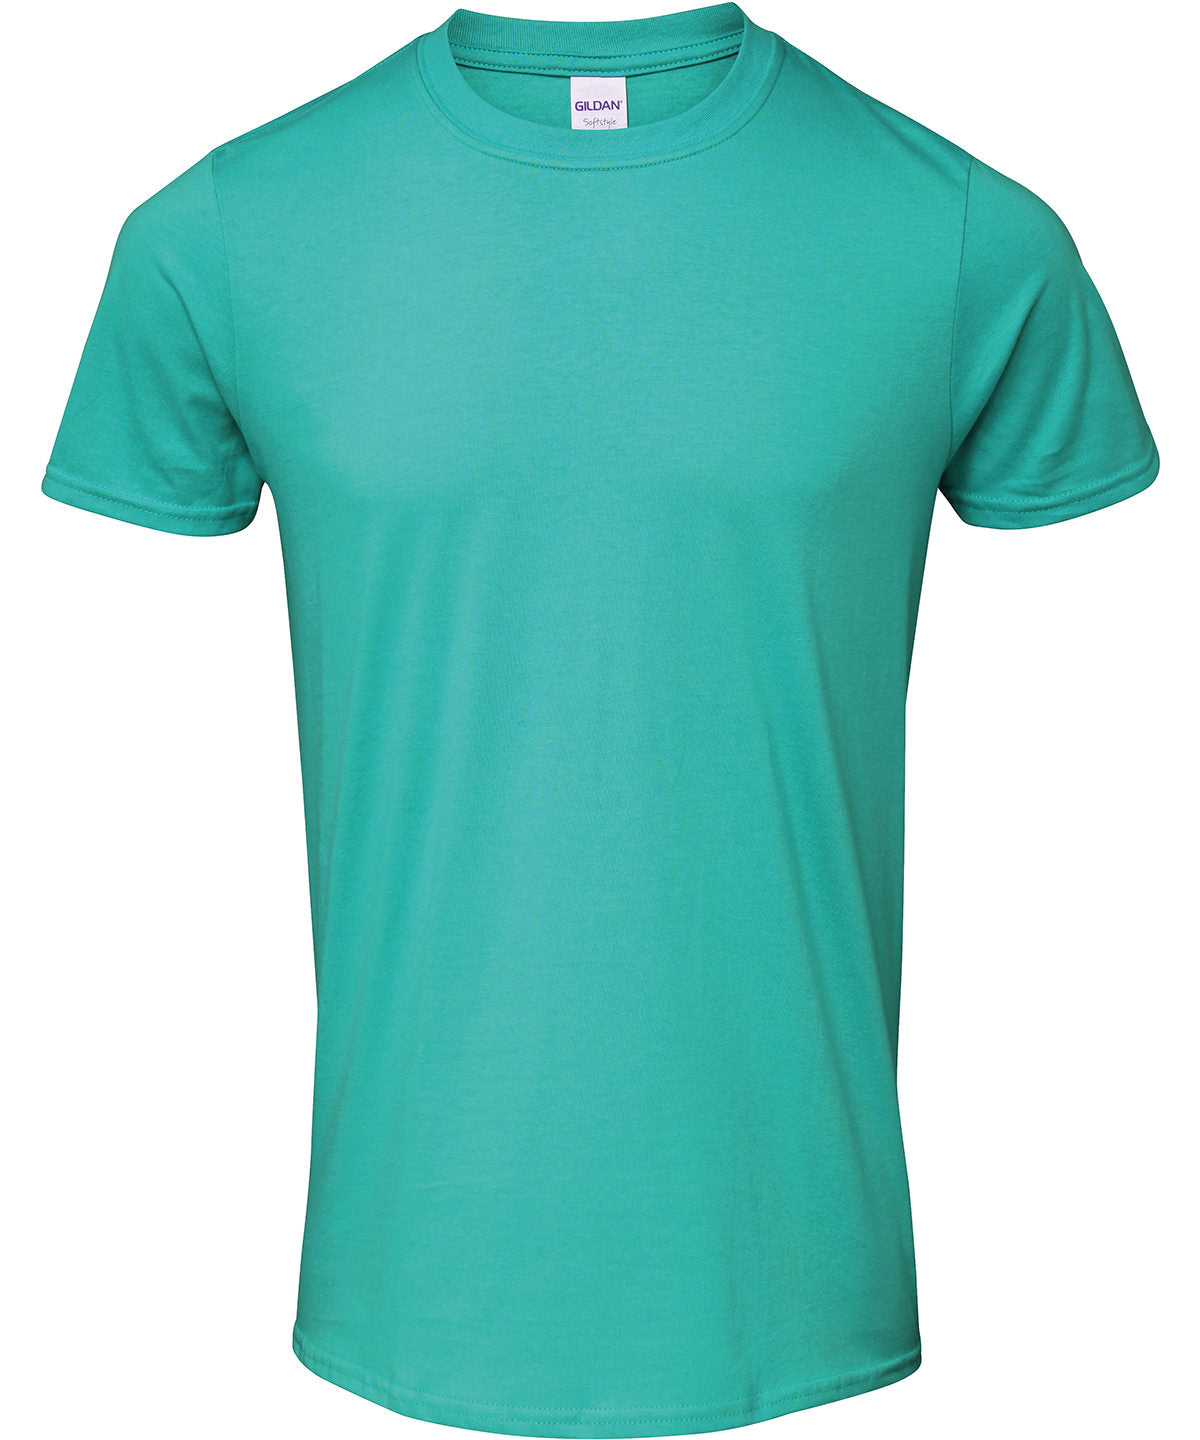 Gildan Softstyle adult ringspun t-shirt Jade Dome